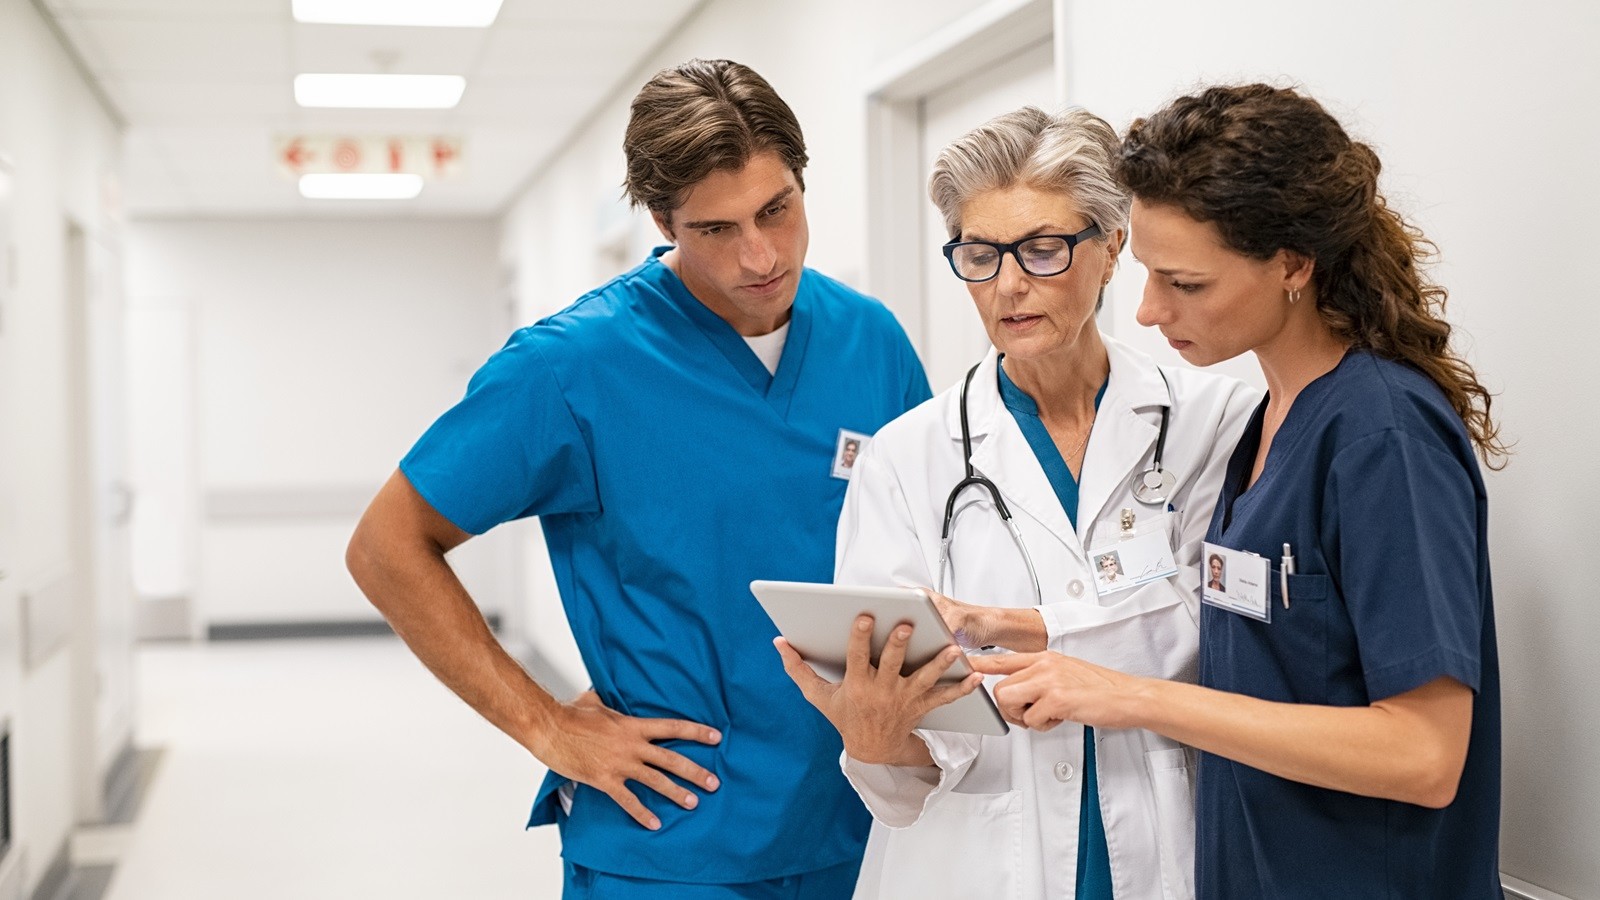 Sundhedspersonale der kigger på en tablet sammen